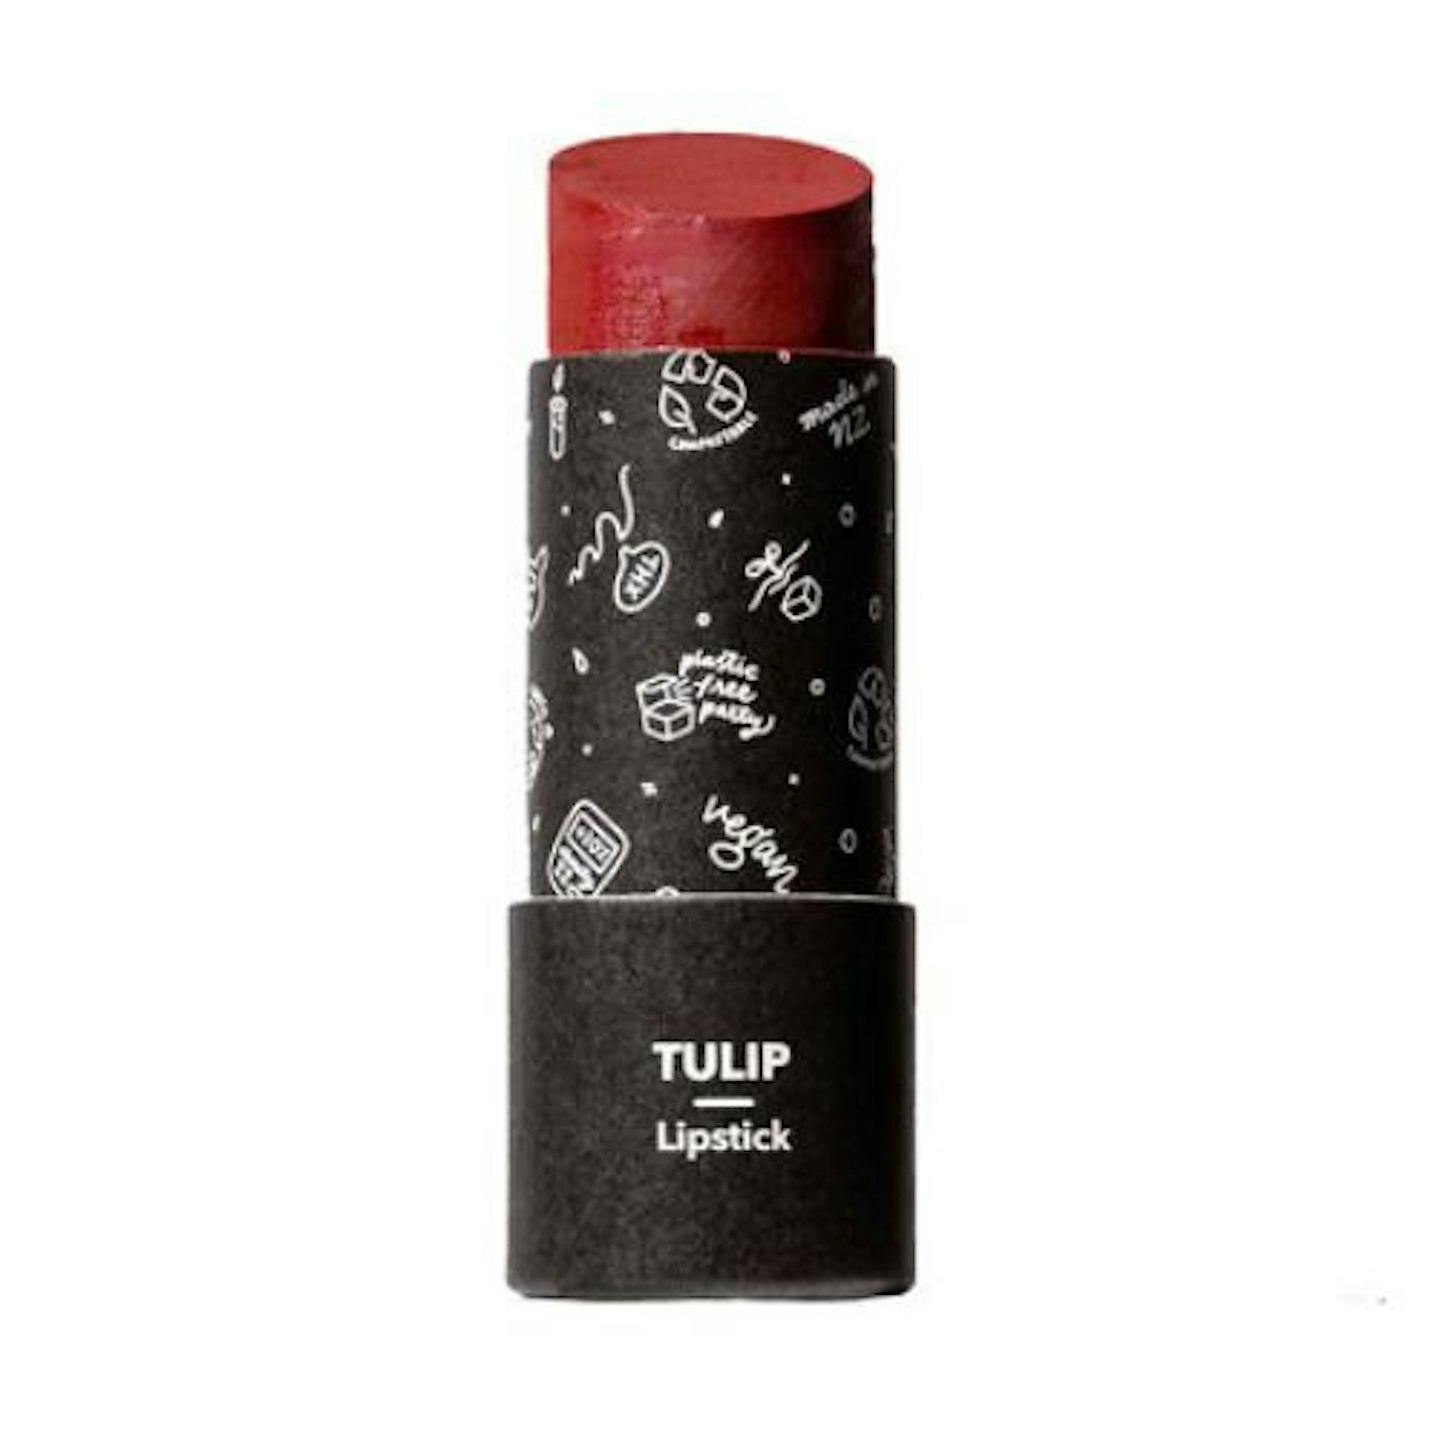 Ethique Tulip Lipstick